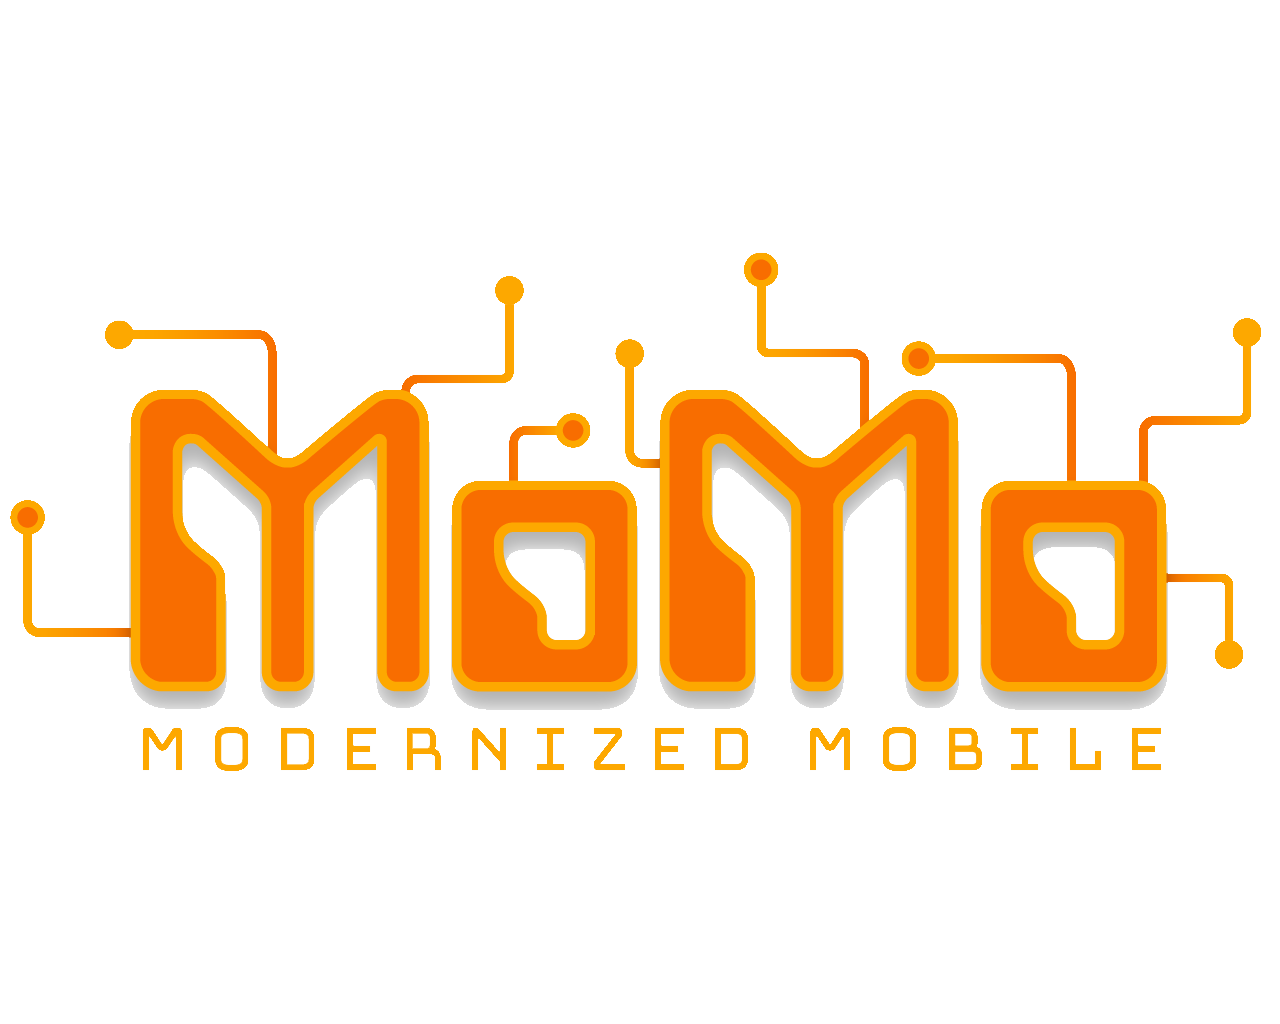 Modernized Mobile LLC